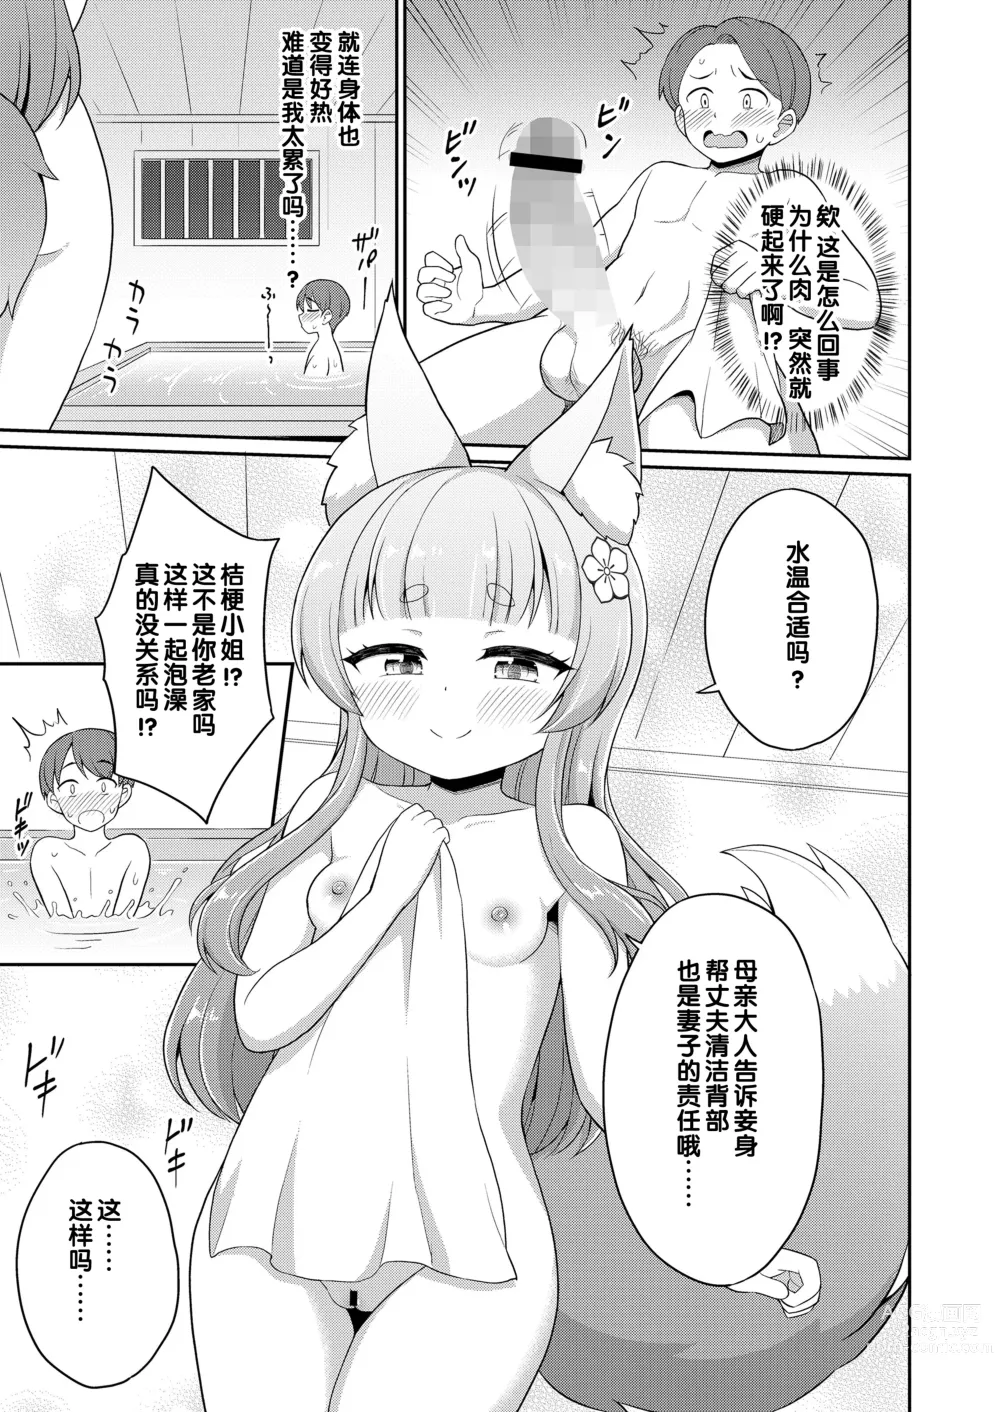 Page 31 of manga 婚活 1-2